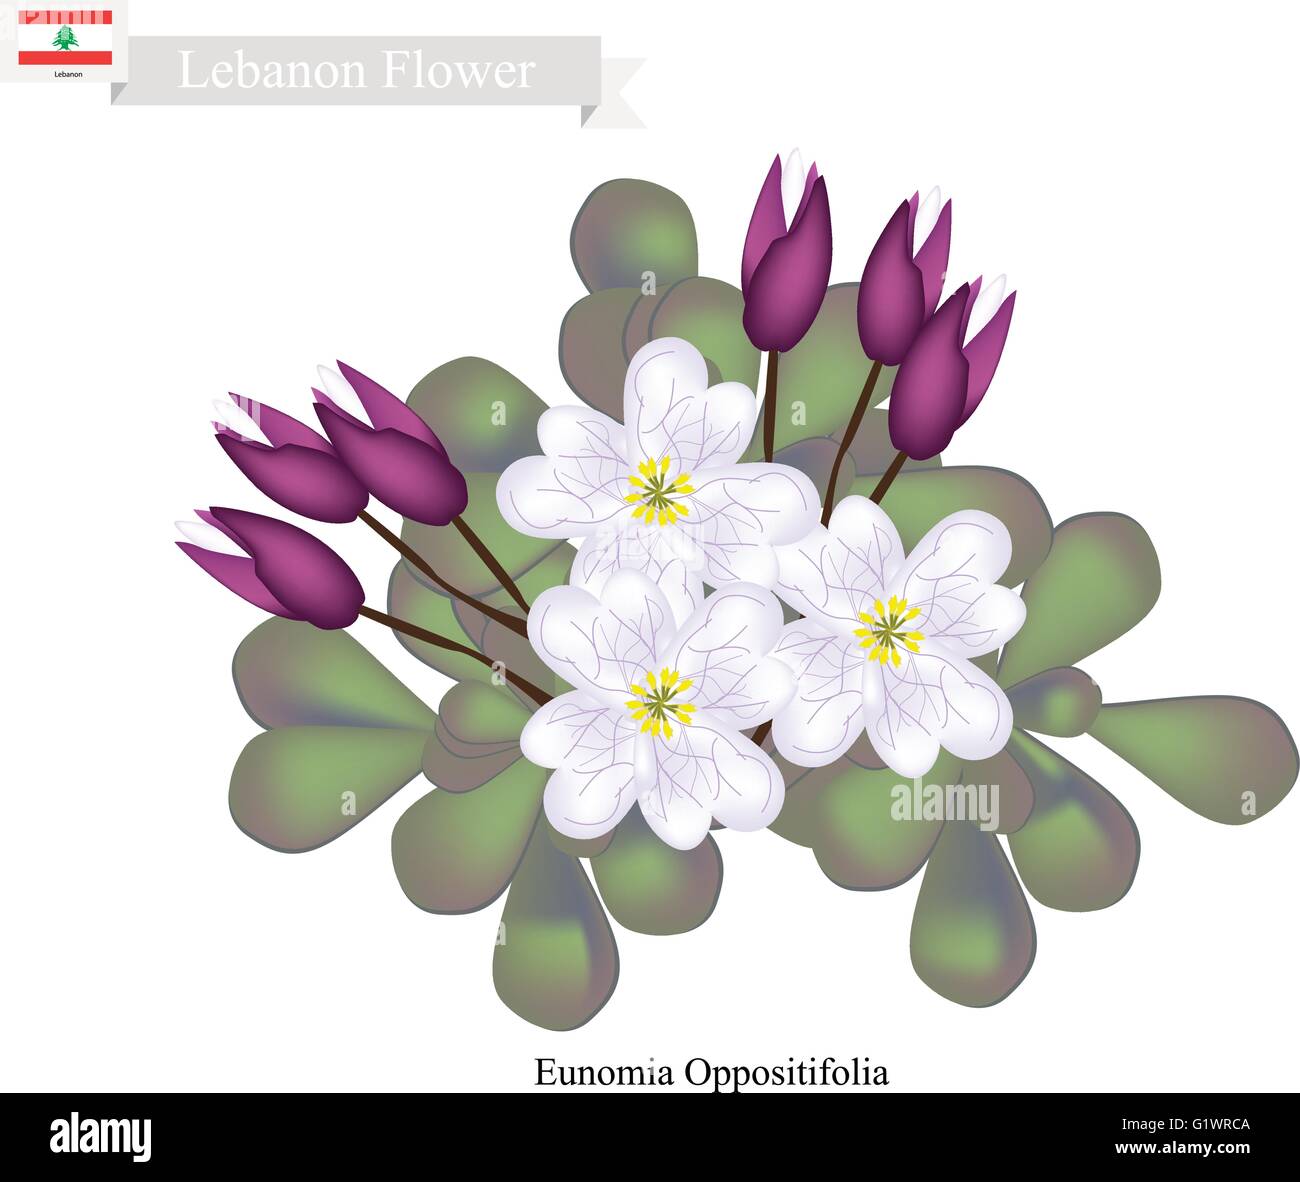 Lebanon Flower, Illustration of Eunomia Oppositifolia Flowers. One of The Most Popular Flower in Lebanon. Stock Vector